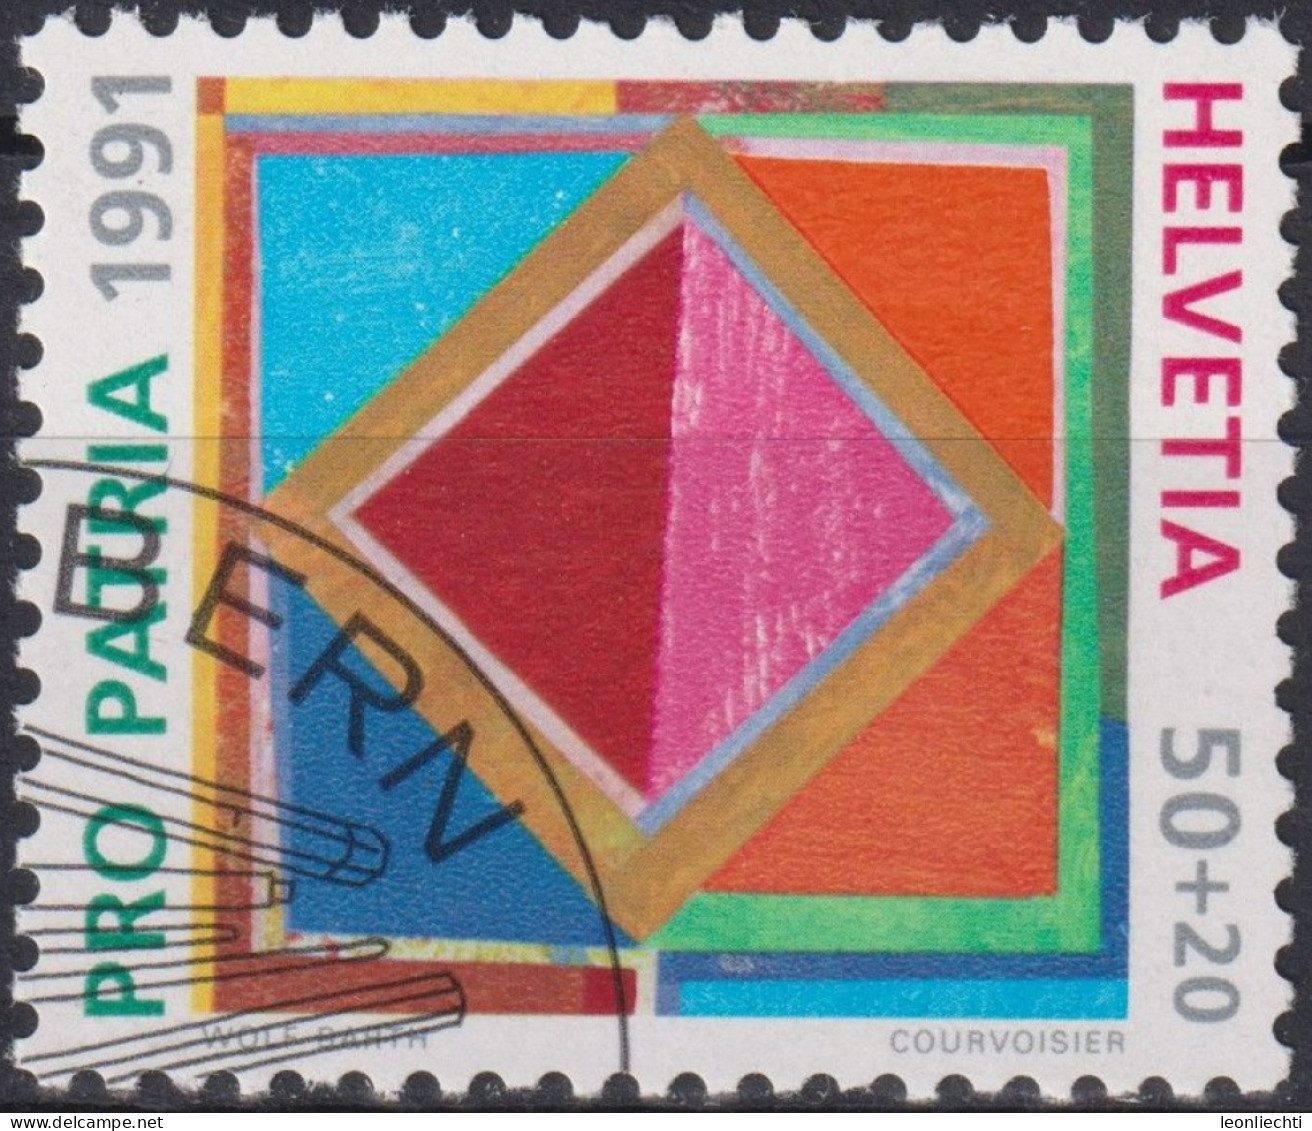 1991 Schweiz Pro Patria, Zeitgenössische Kunst, Quadrat, ⵙ Zum:CH B231, Mi:CH 1446, Yt: CH 1474 - Oblitérés